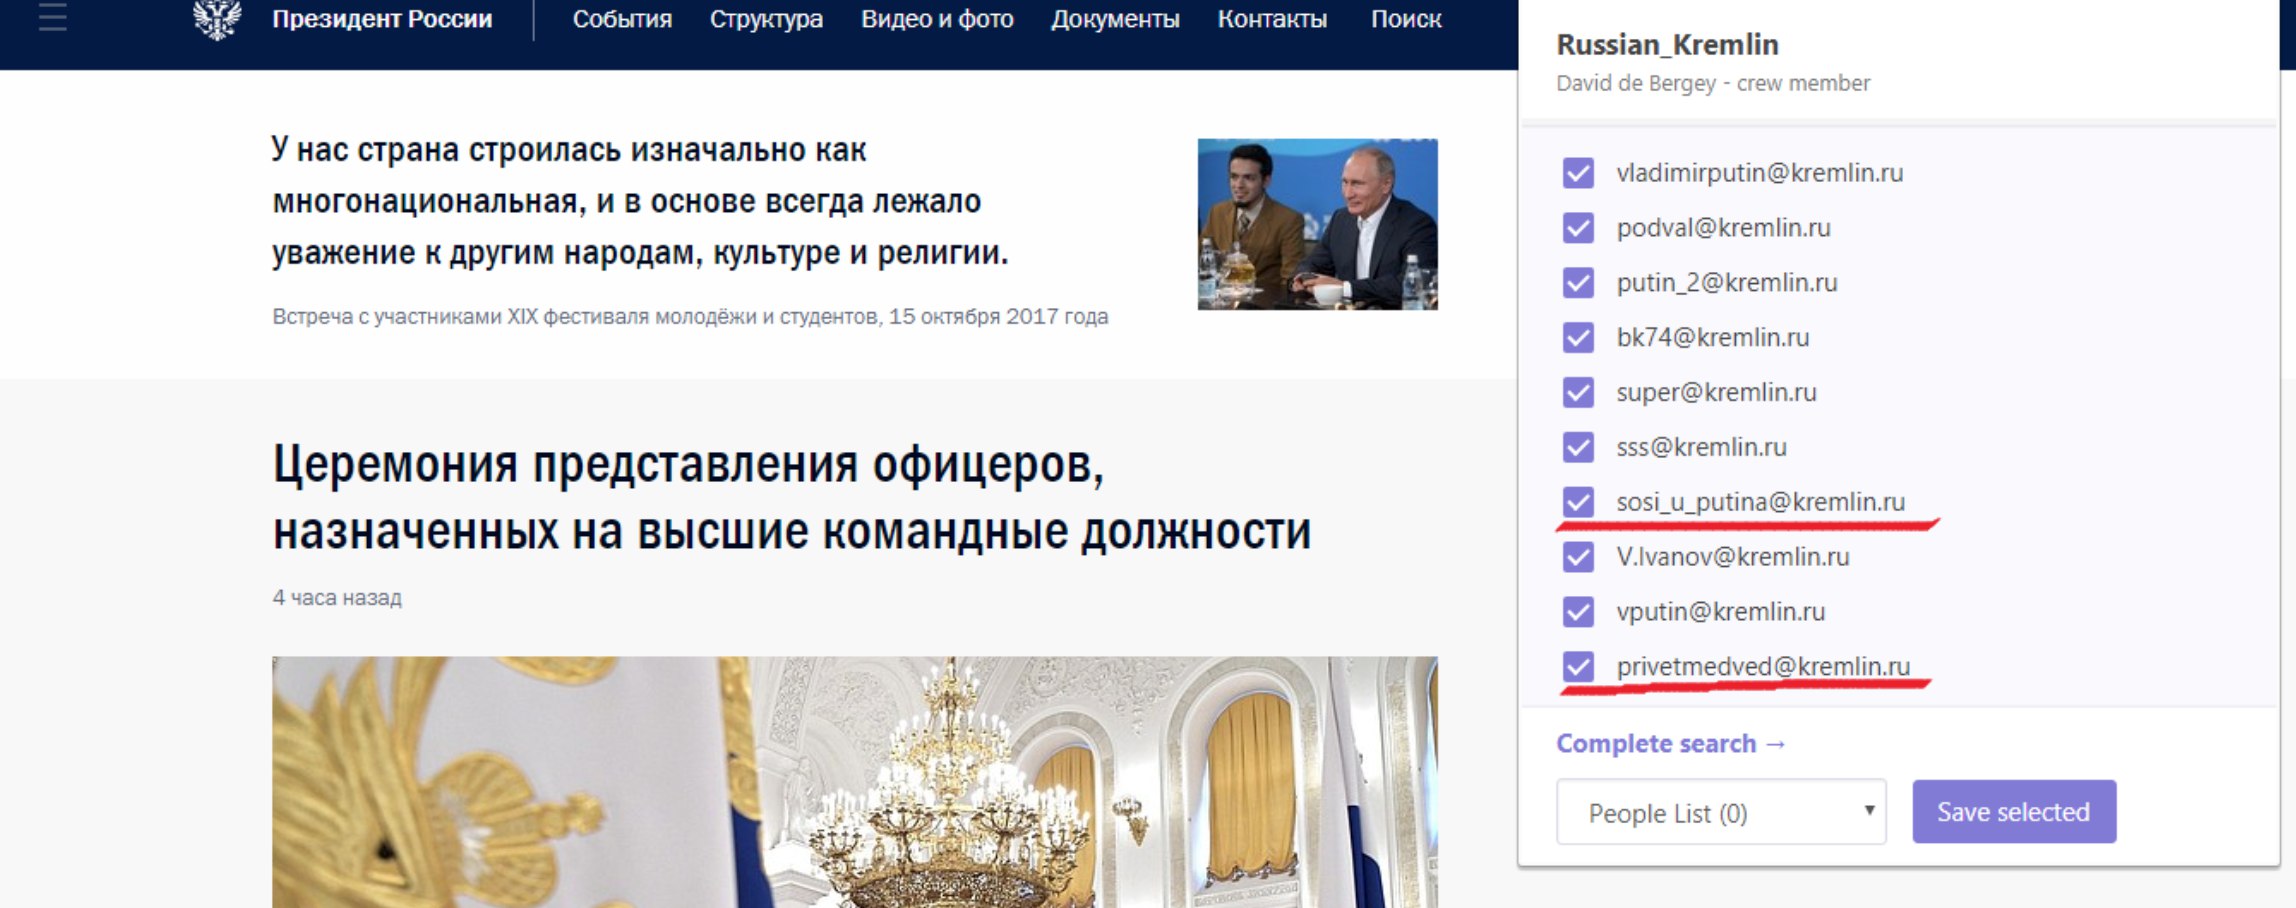 Сайт президента назначения. Кремлин ру.